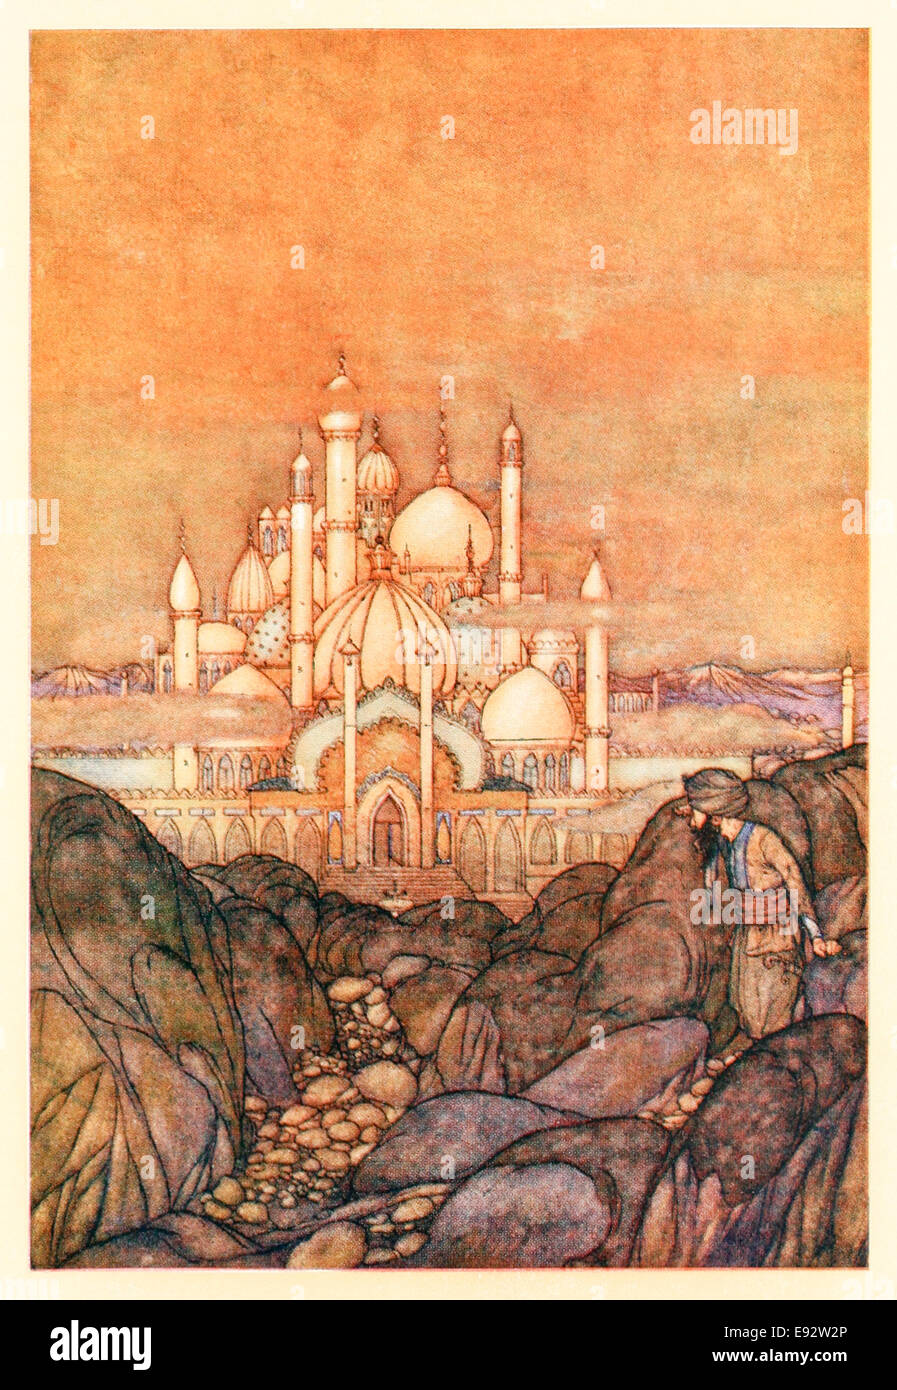 Edmund Dulac - L'illustration à partir de témoignages de l'Arabian Nights'. Voir la description pour plus d'informations Banque D'Images